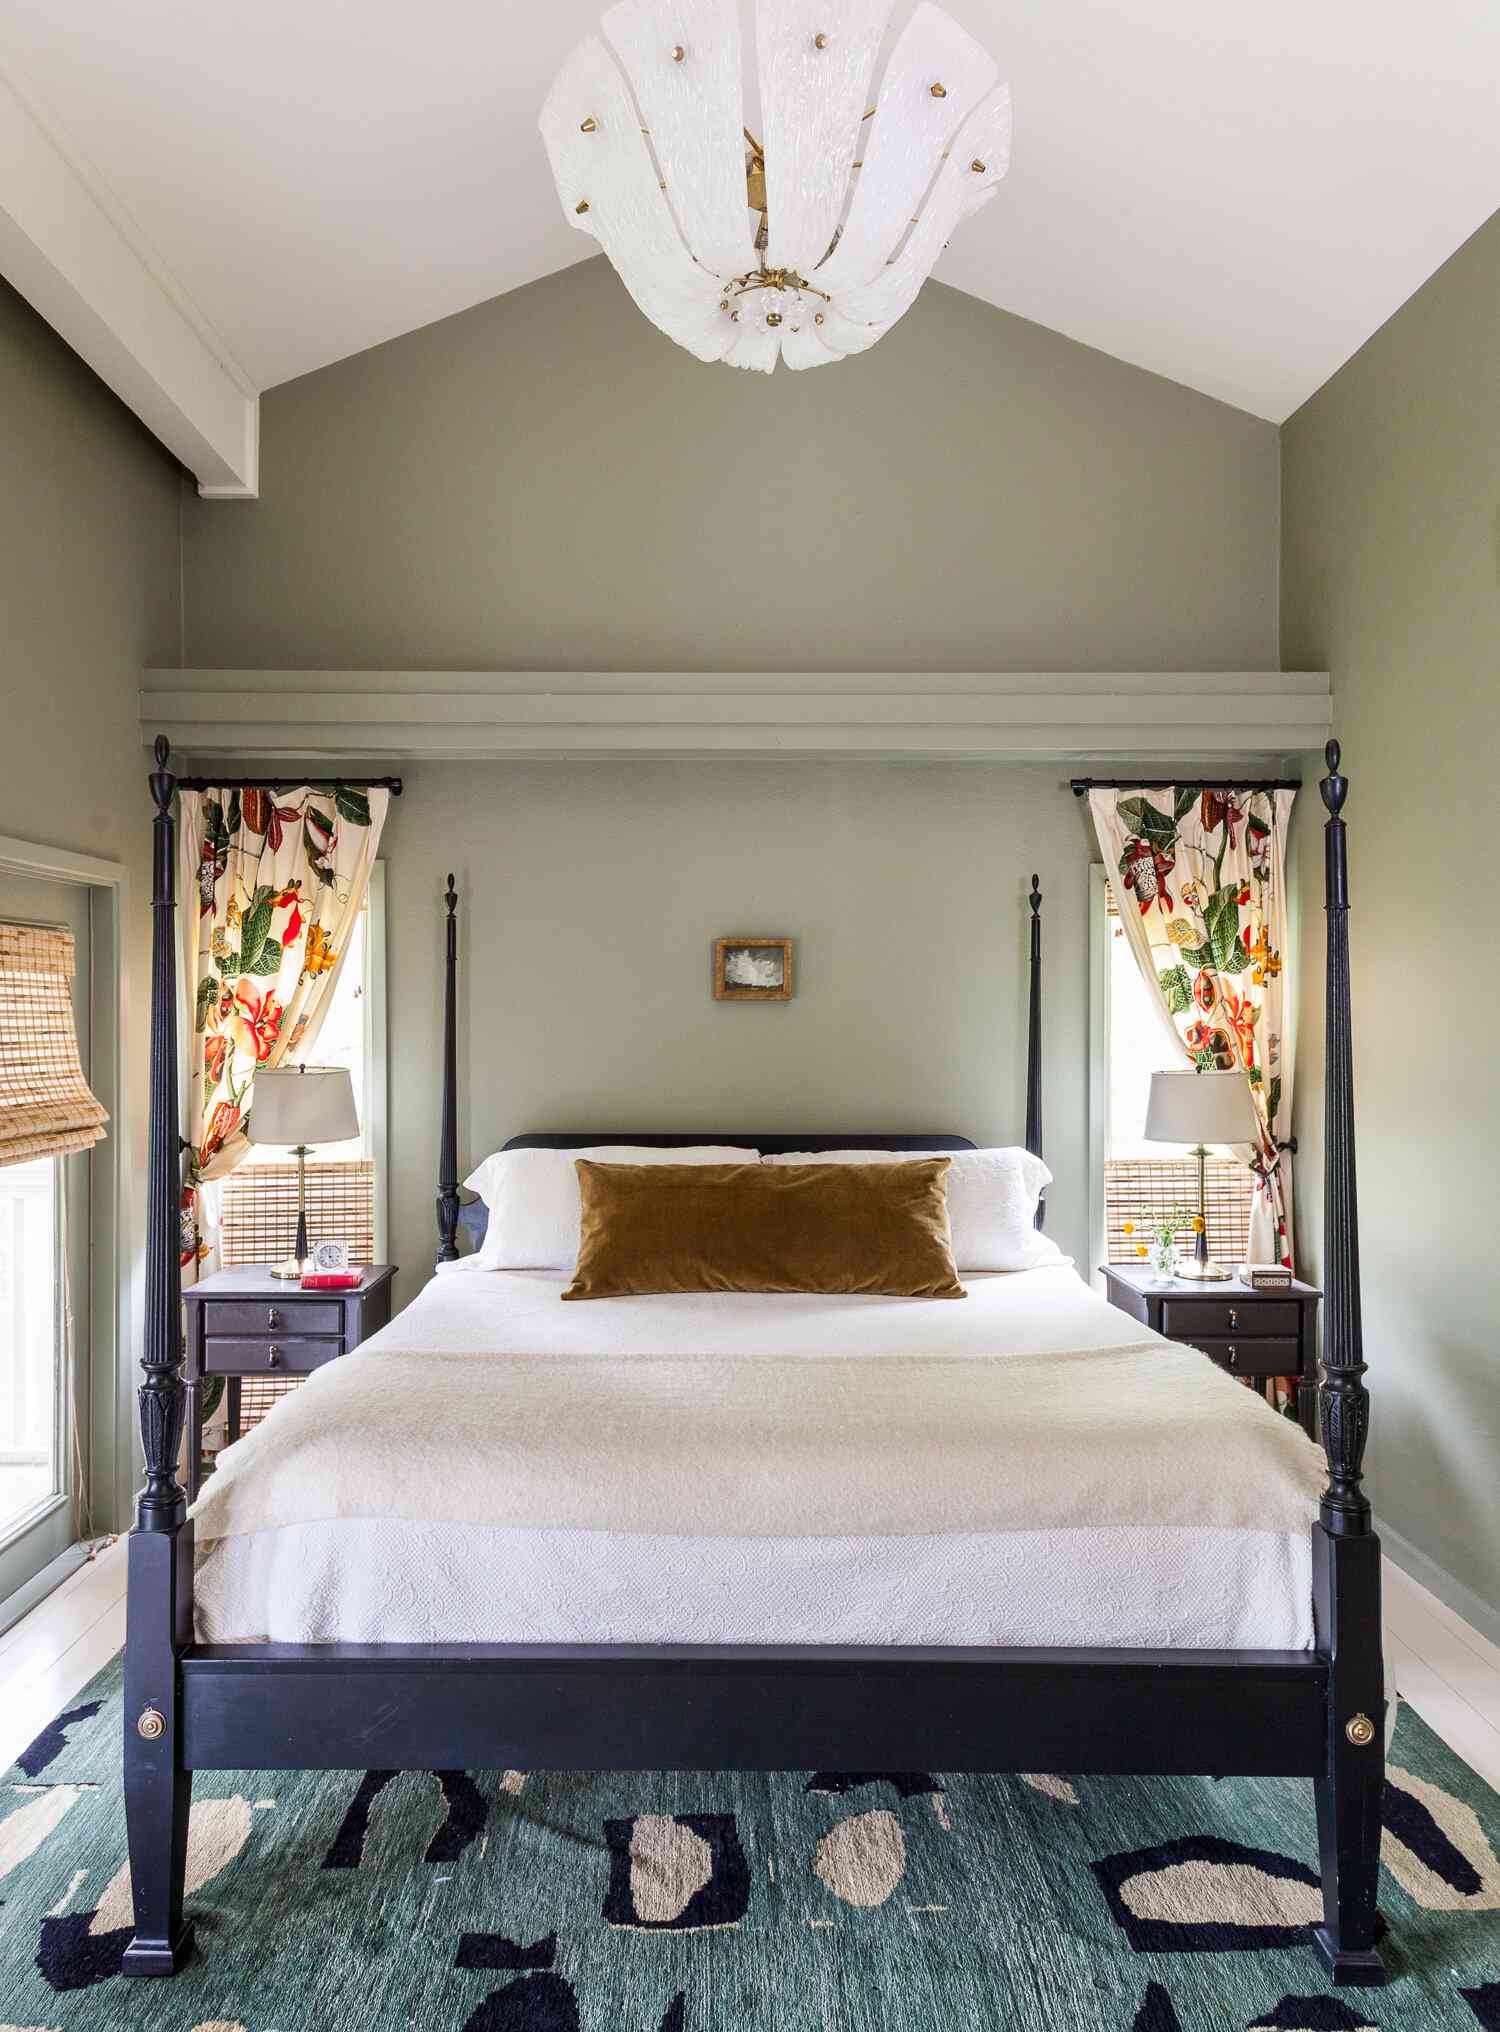 cortinas florais estreitas em ambos os lados da cama